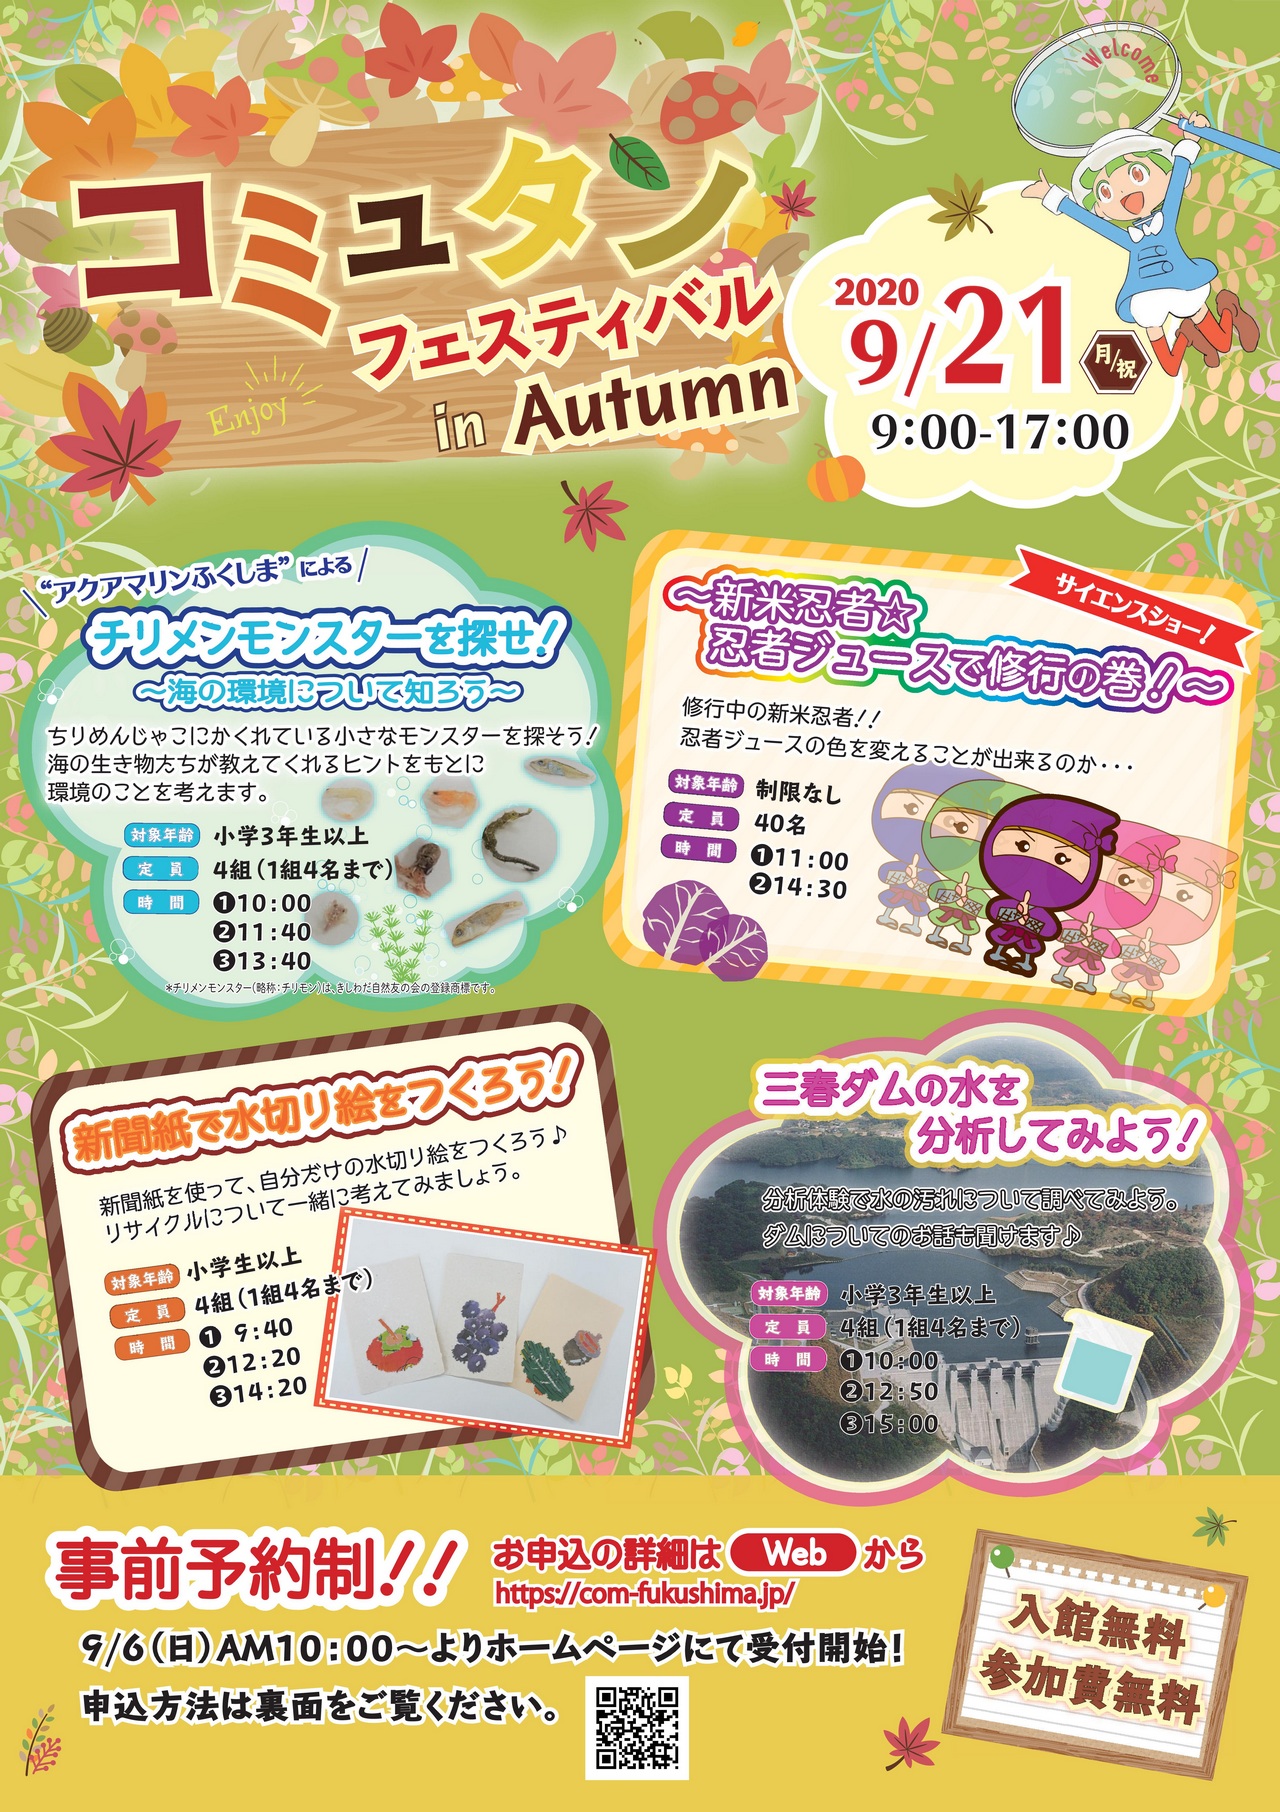 コミュタン福島 コミュタンフェスティバル in Autumn 2020